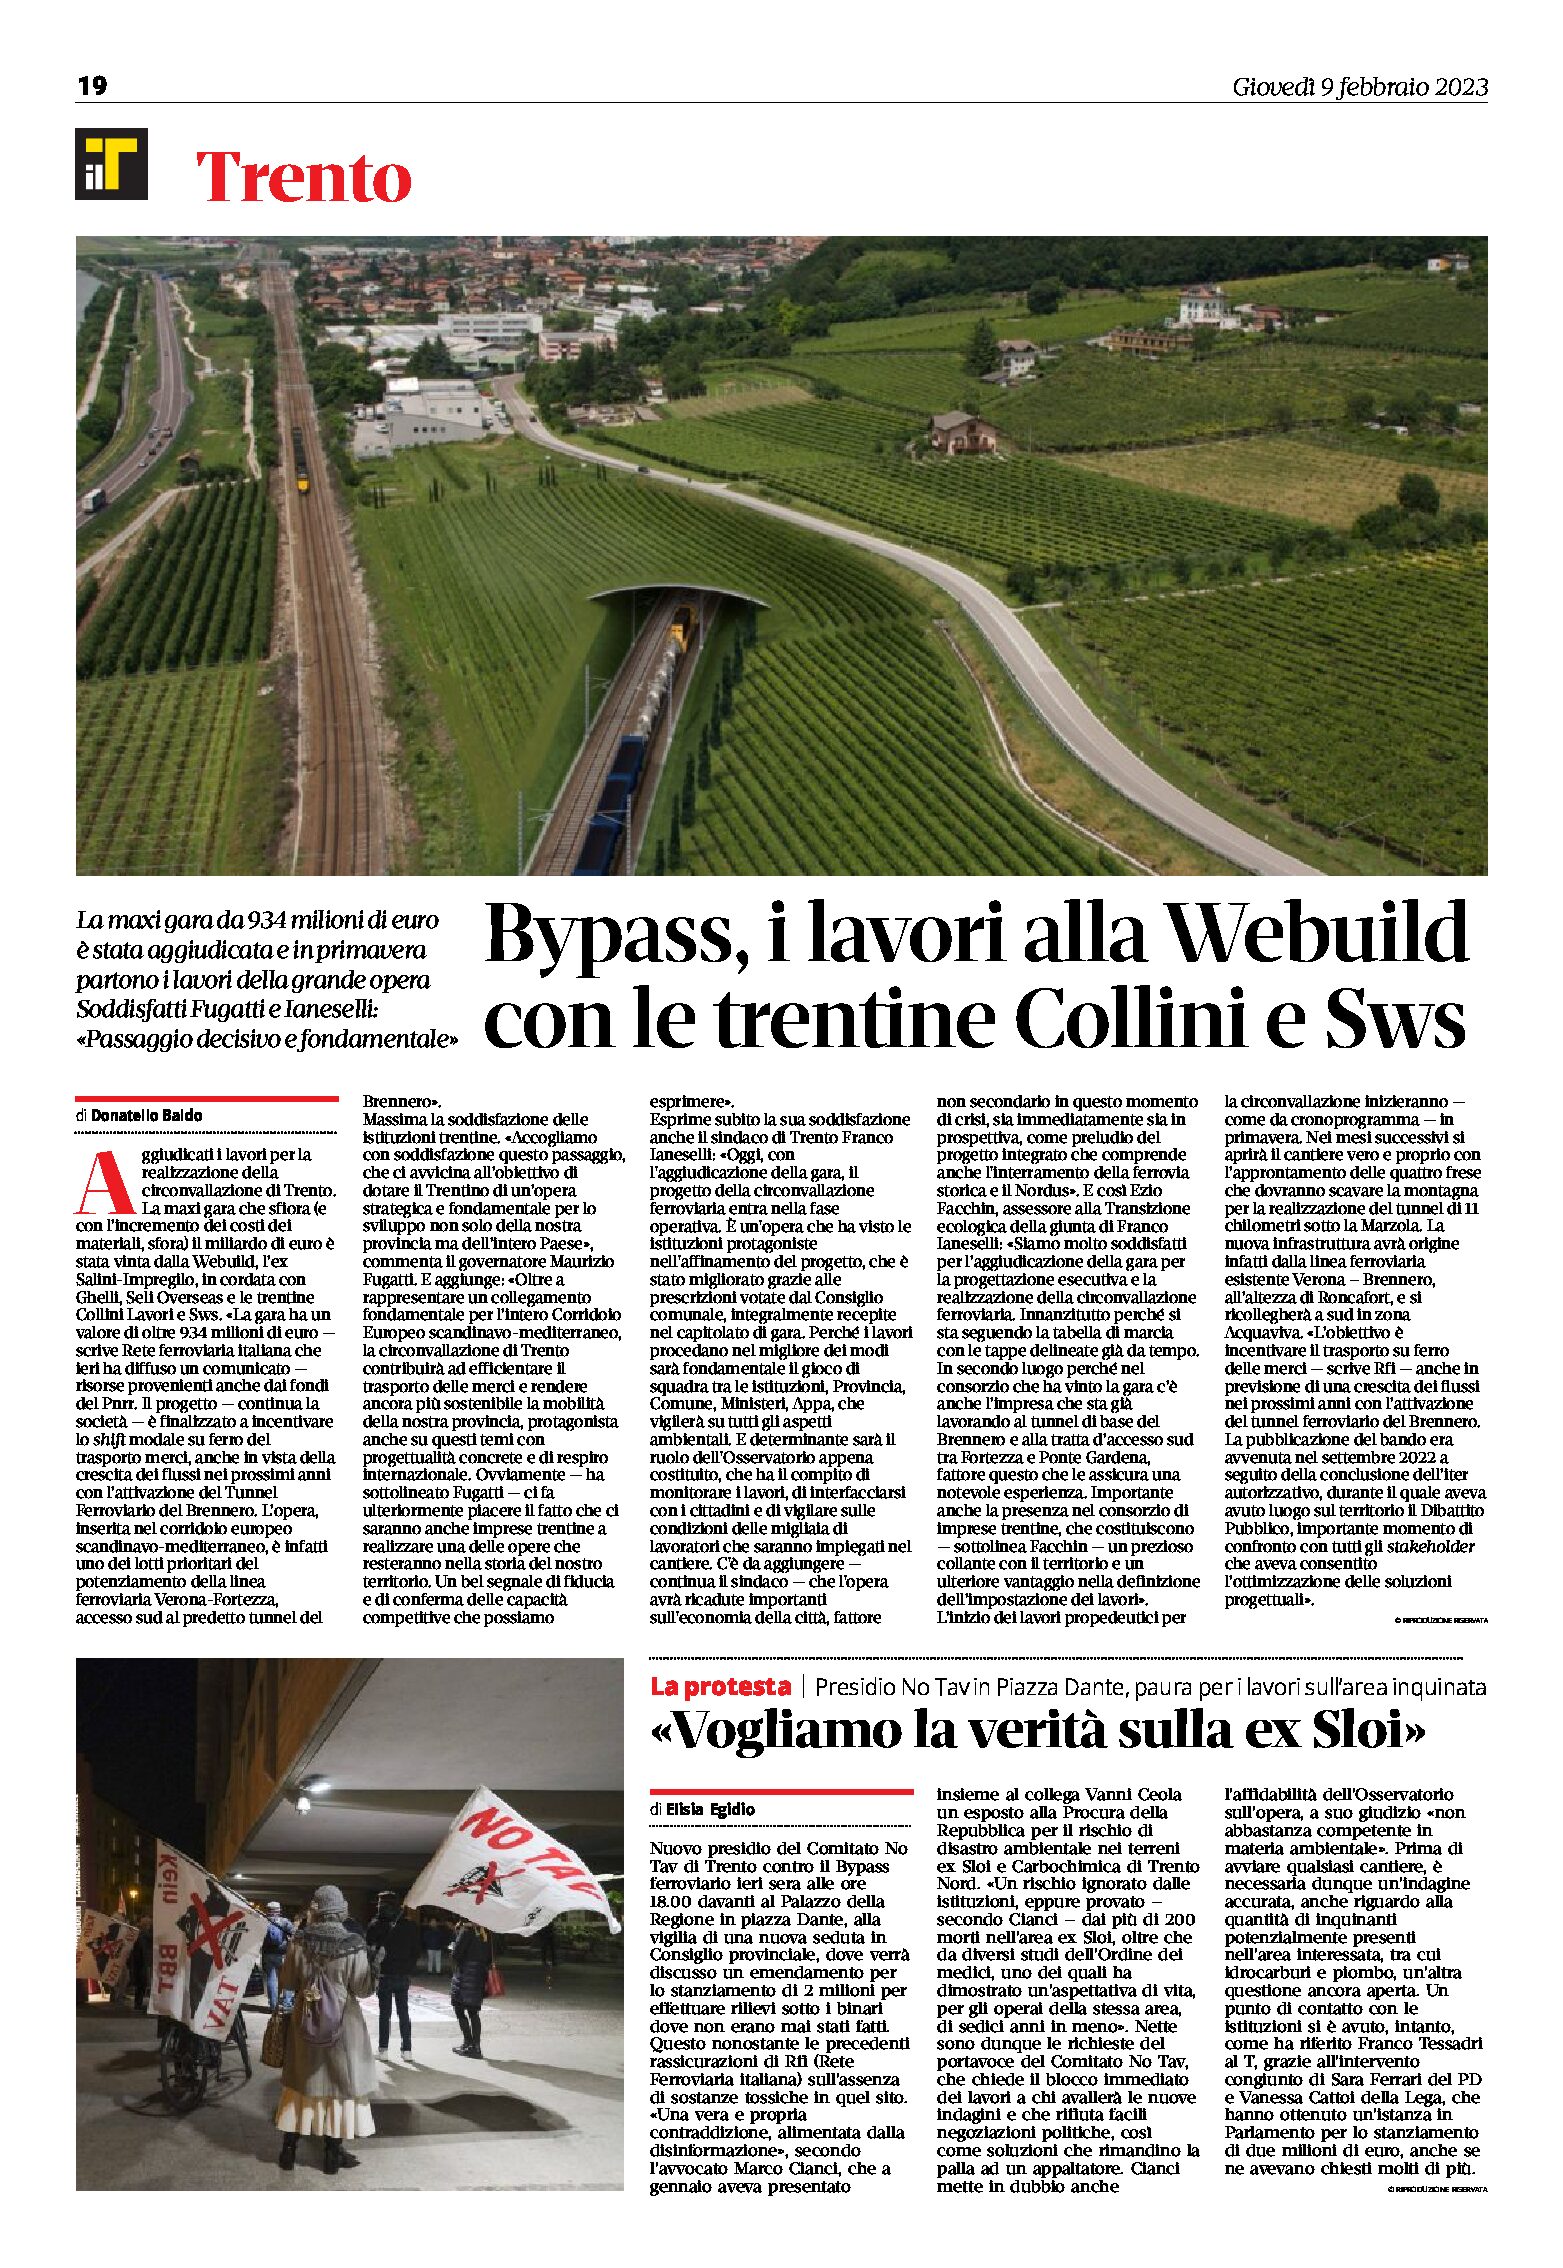 Trento, bypass: i lavori alla Webuild con le trentine Collini e Sws